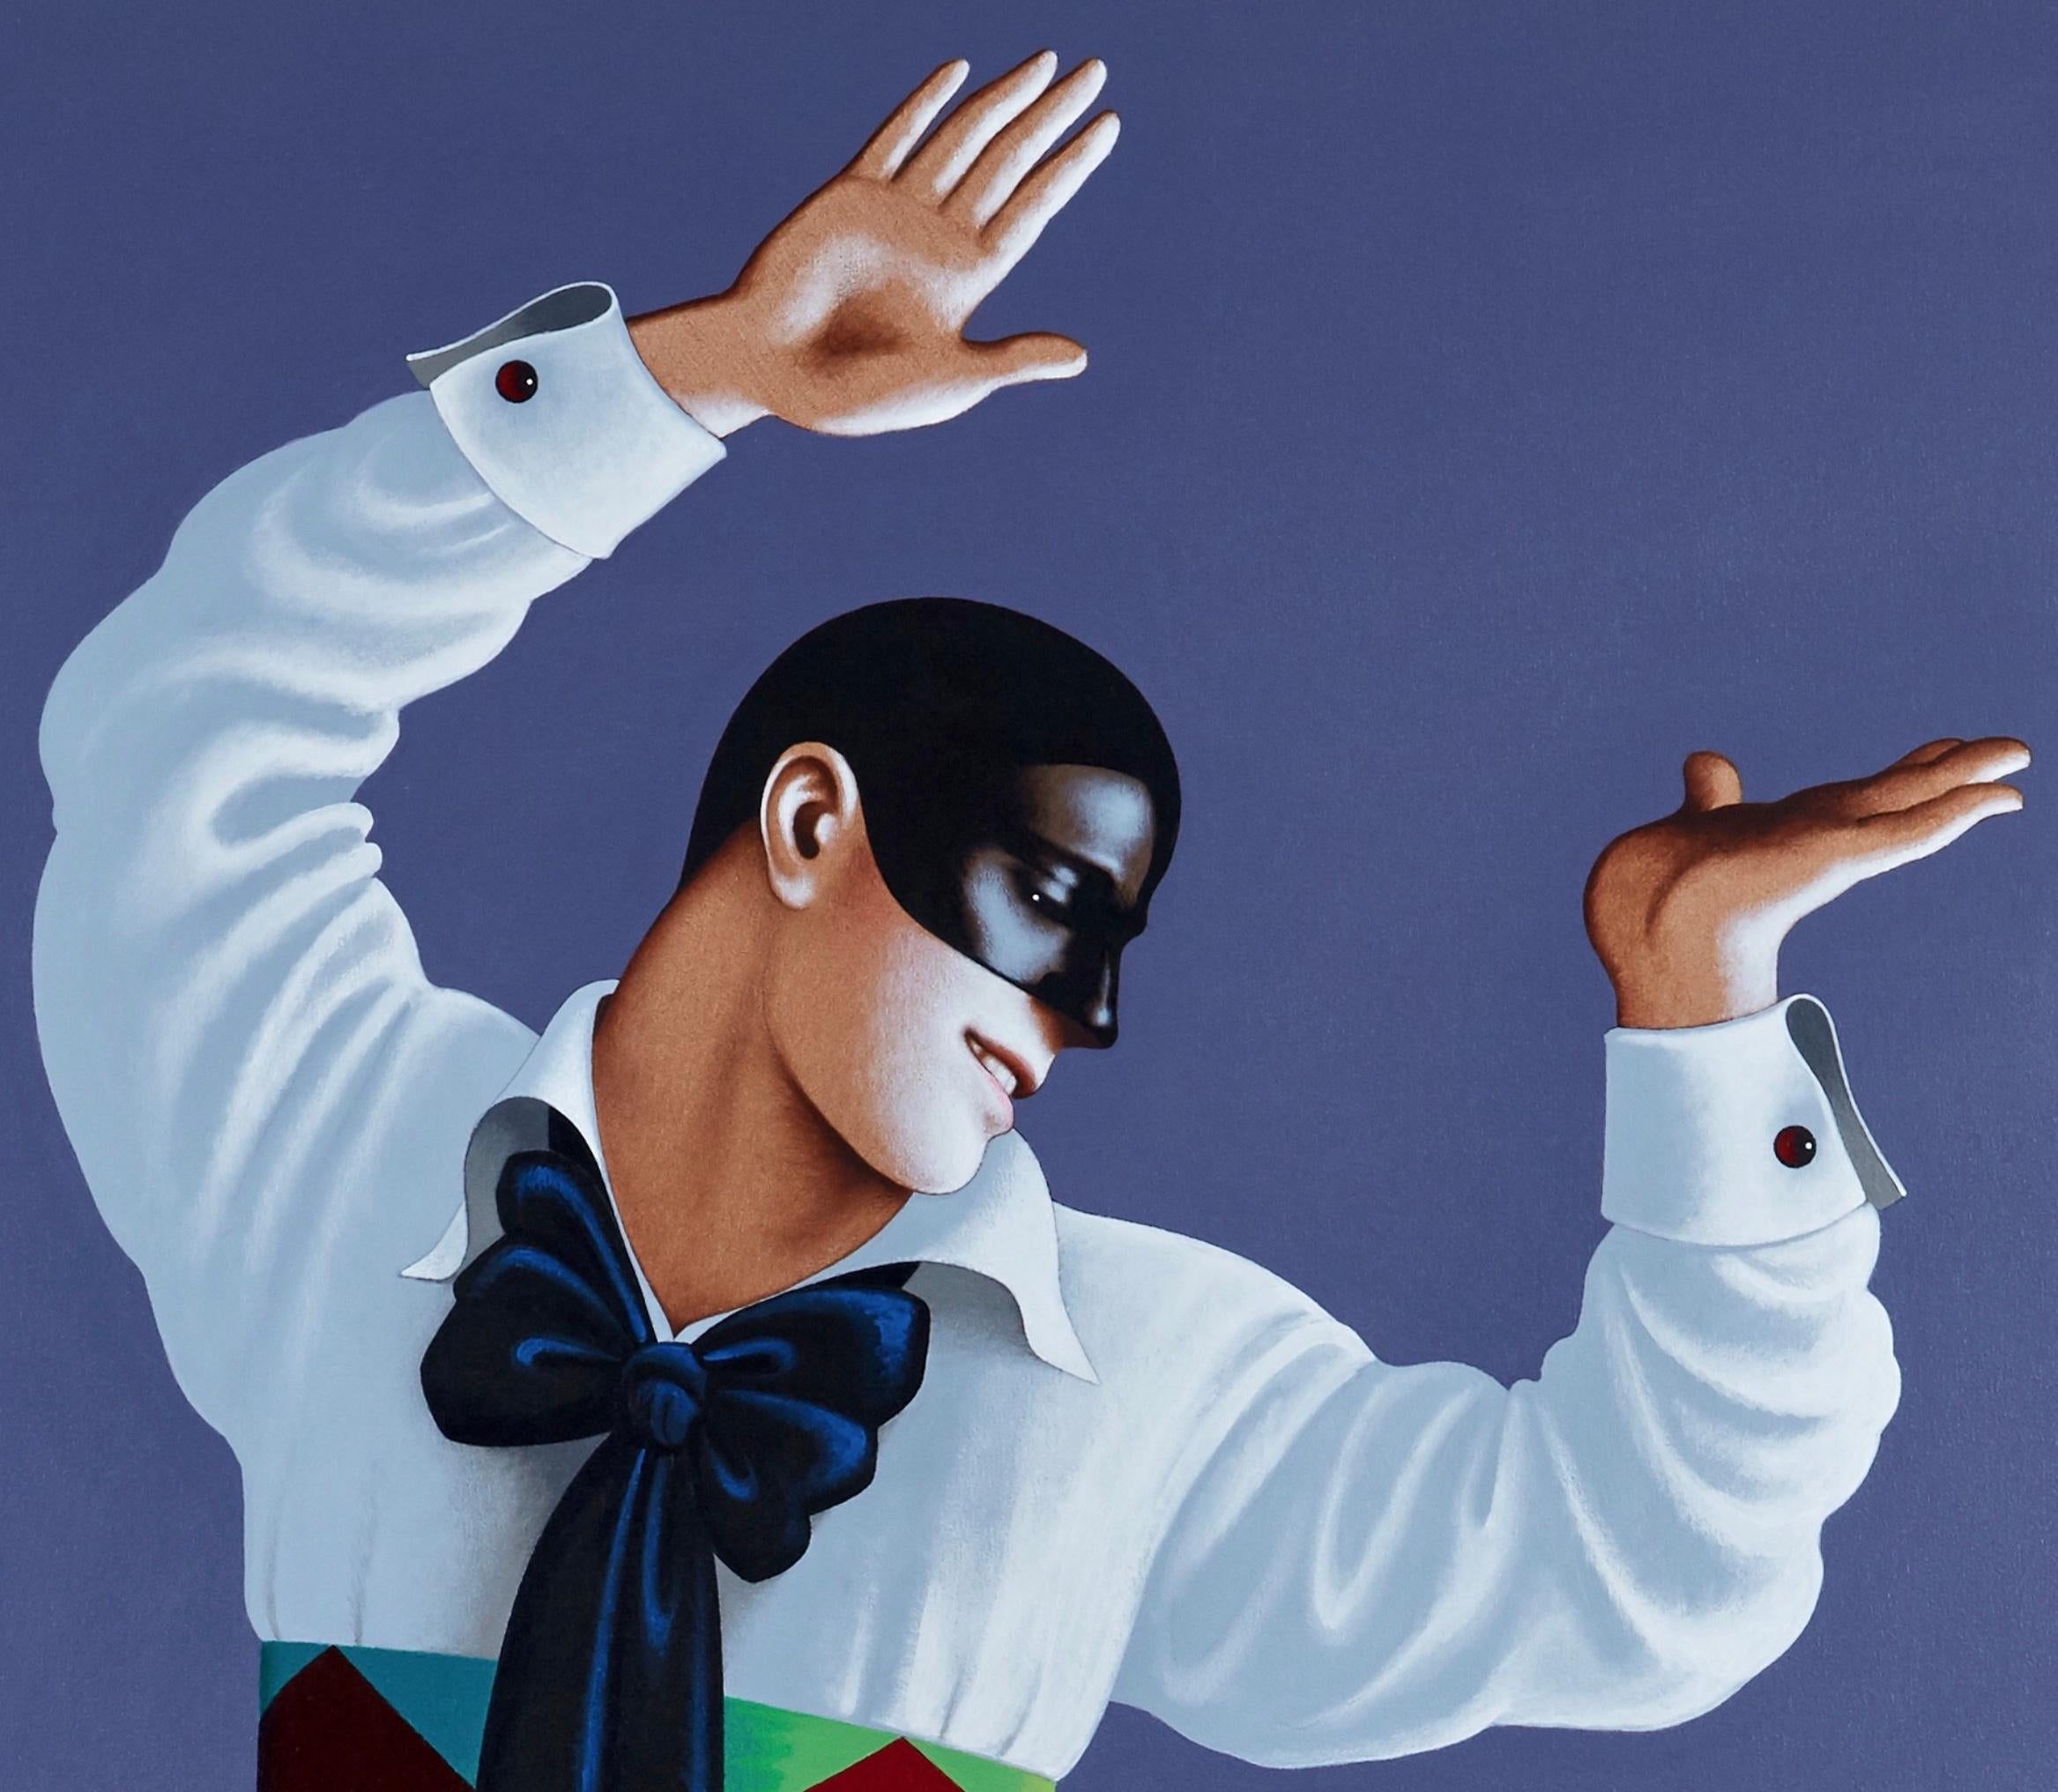 Nijinsky als Harlekin.
Originalgemälde in Lebensgröße von Lynn Curlee
Der große Tänzer Vaslav Nijinsky in einer seiner berühmtesten Rollen als Harlekin im Carnaval.

Dieses Gemälde wurde als Illustration in Der große Nijinsky, Gott des Tanzes